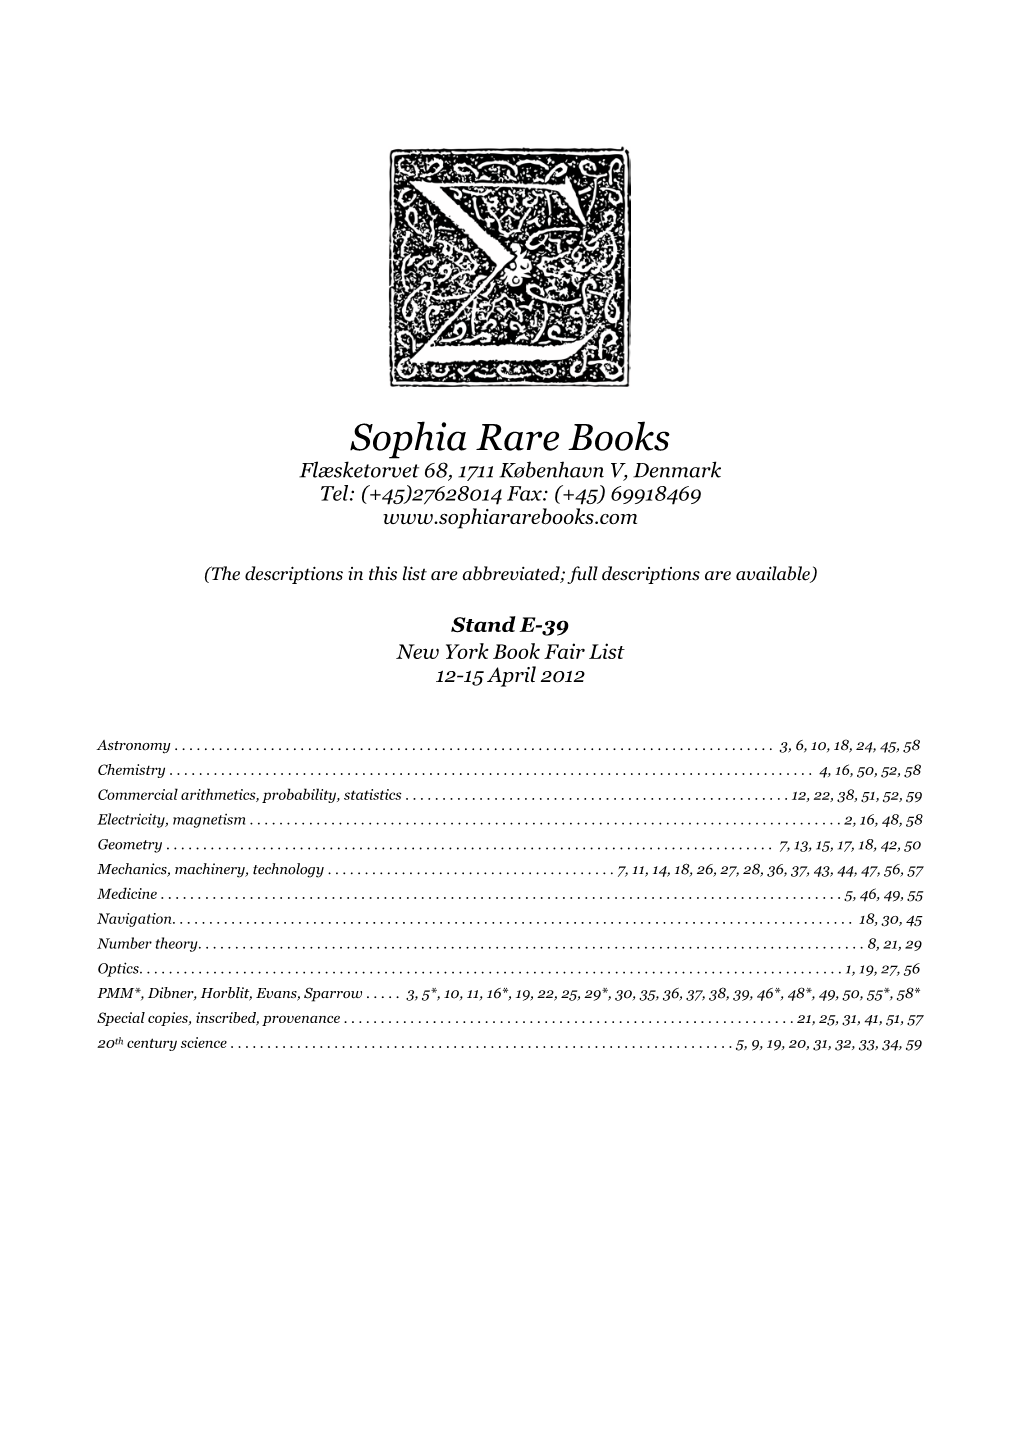 Sophia Rare Books Flæsketorvet 68, 1711 København V, Denmark Tel: (+45)27628014 Fax: (+45) 69918469